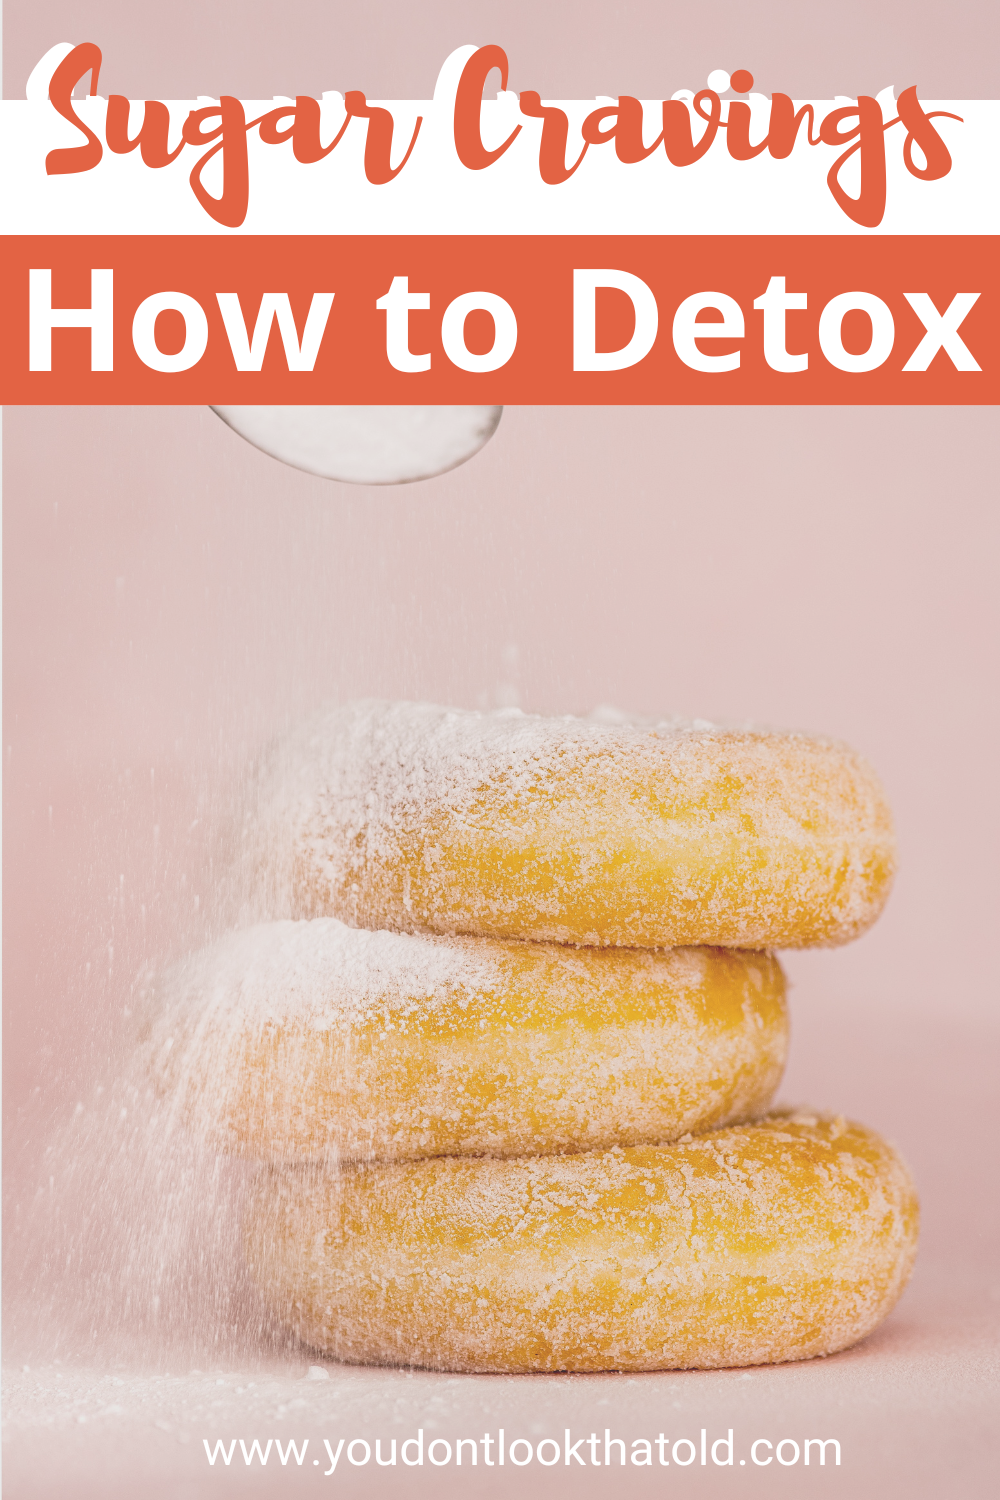 17 Ways to Manage Intense Sugar Cravings When Detoxing
